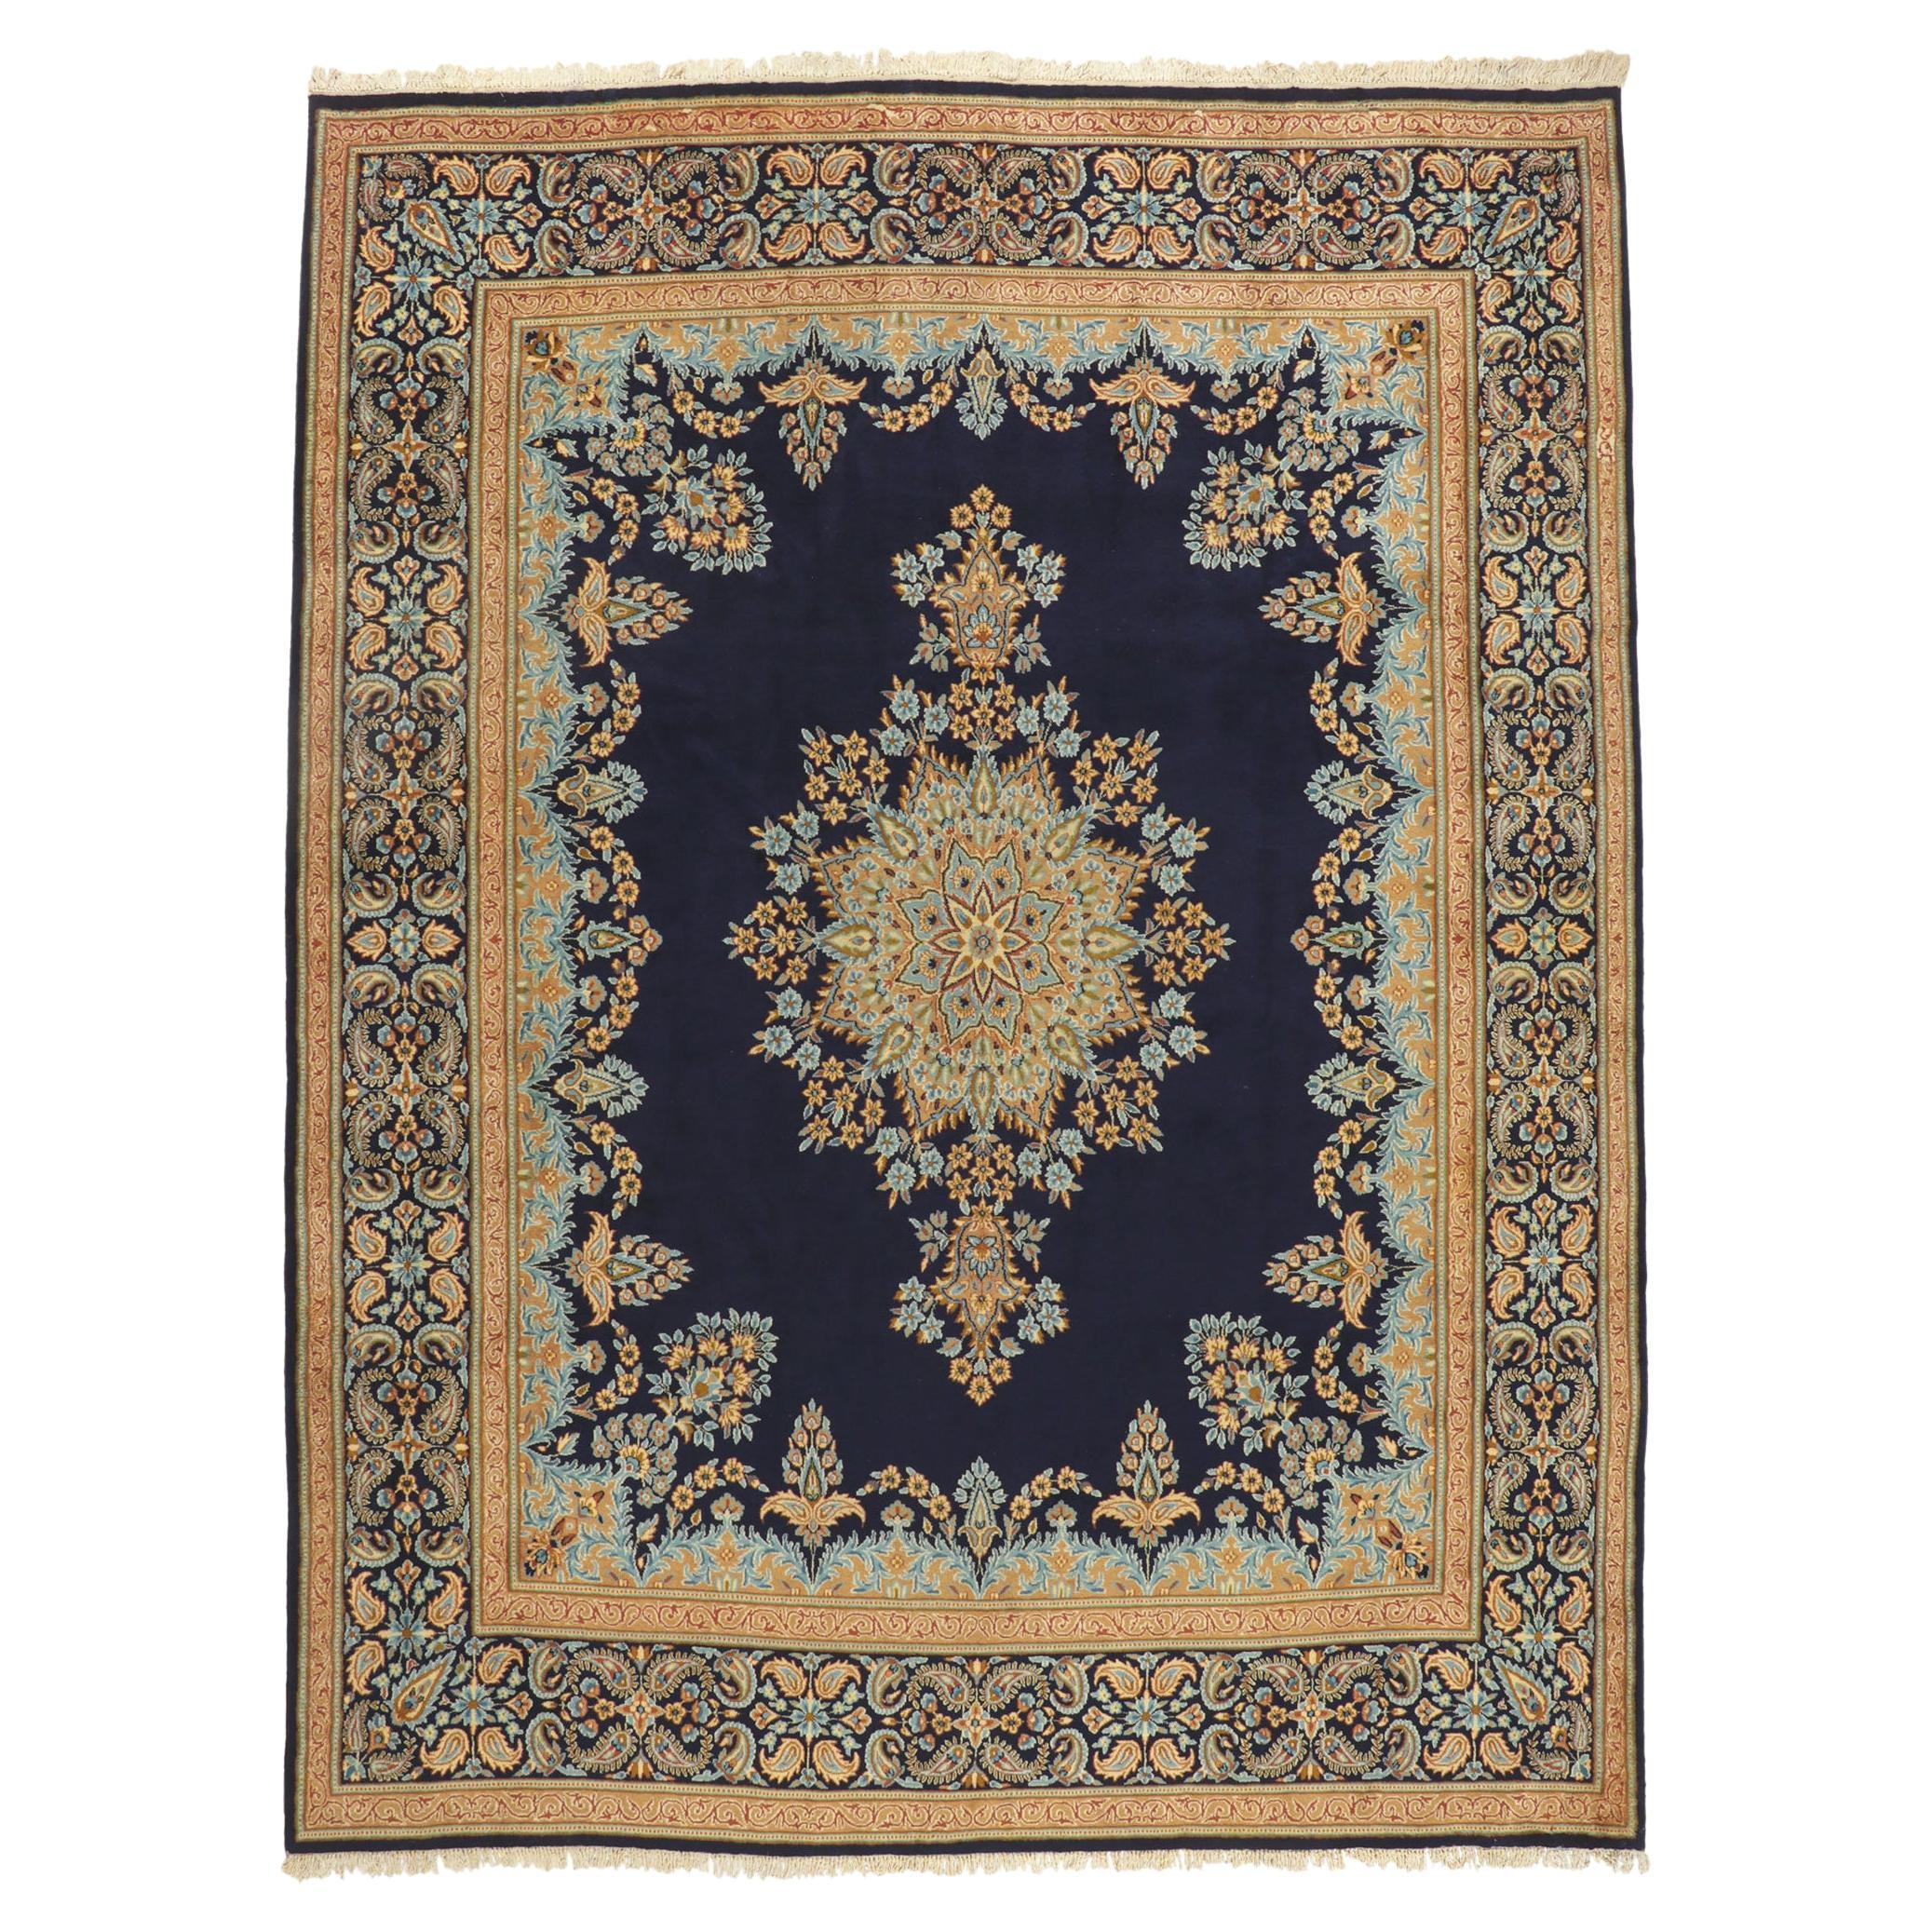 Vintage Persian Kerman Rug